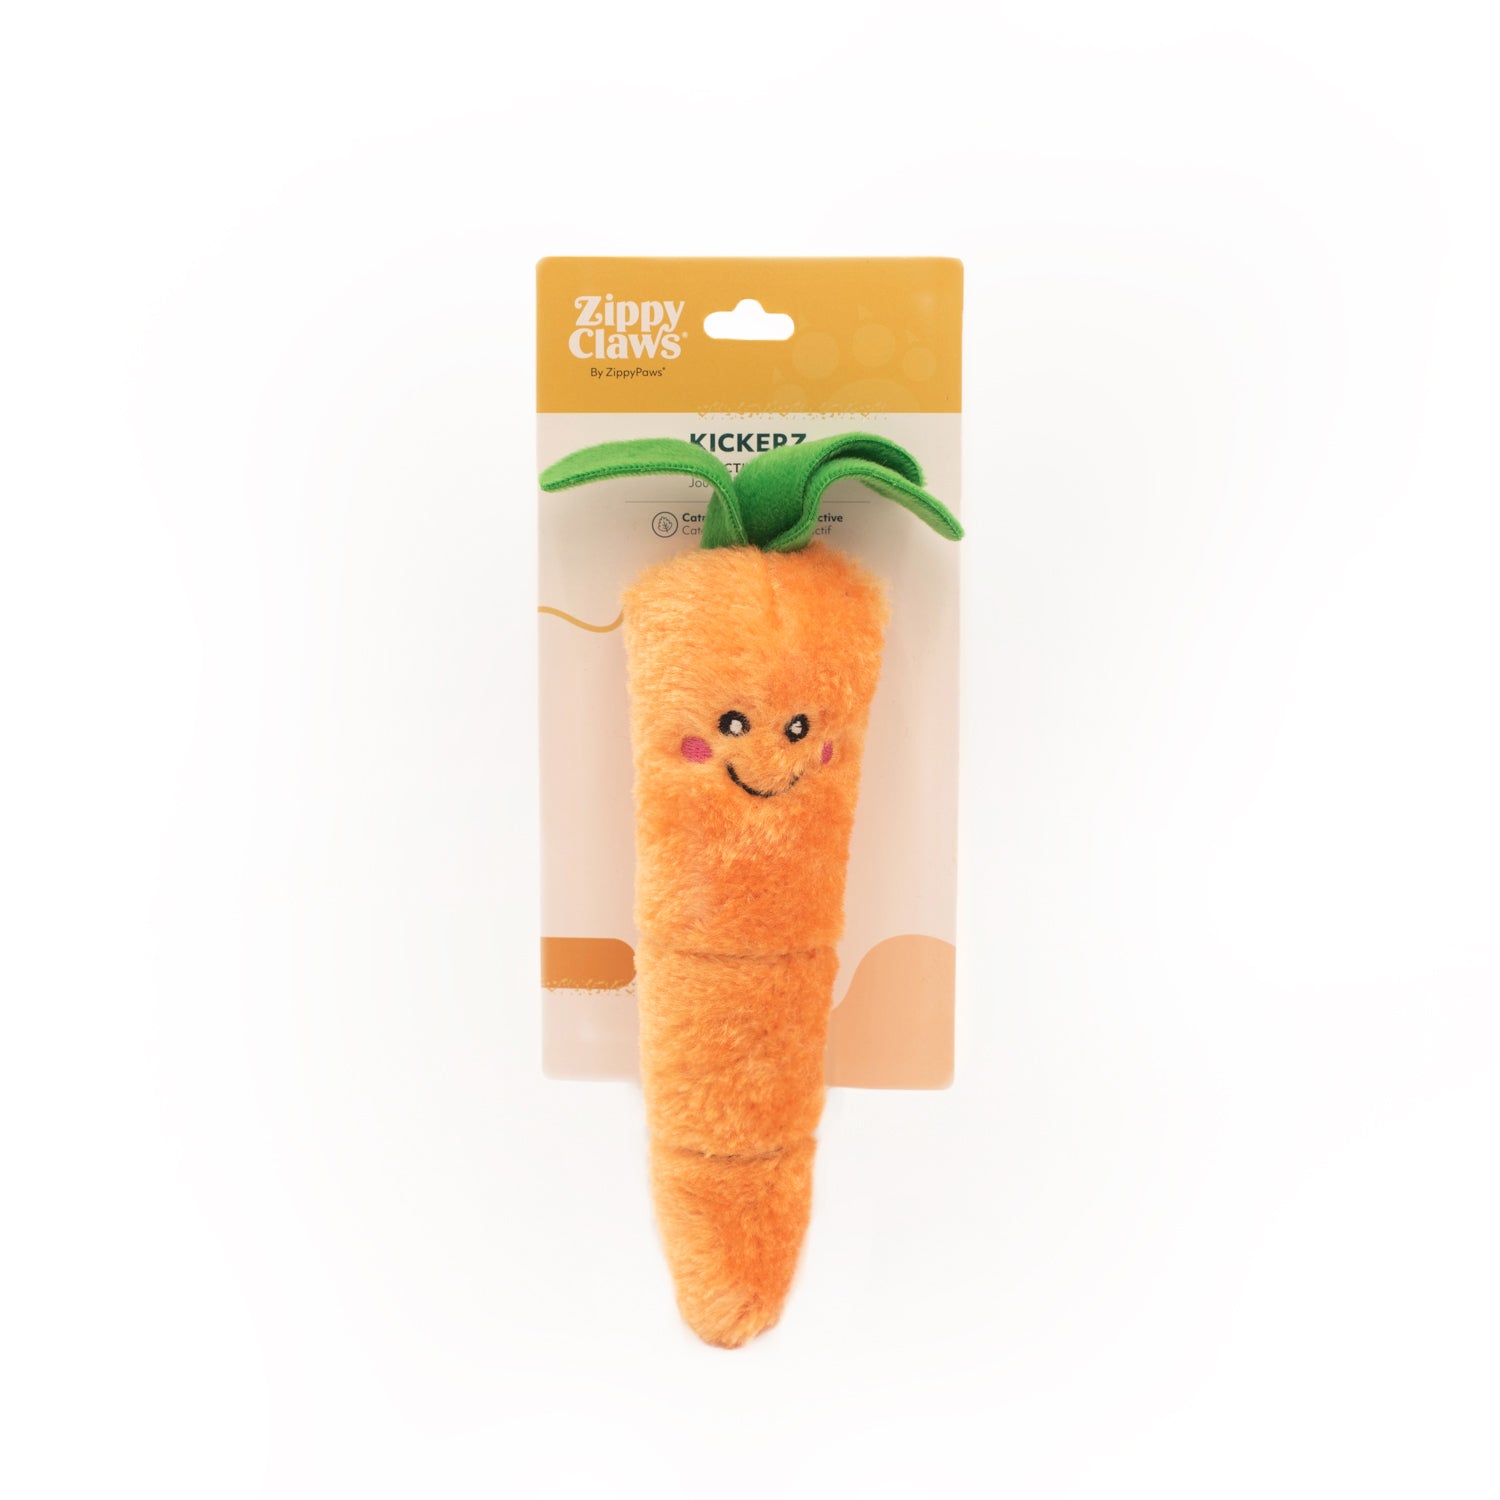 ZippyPaws ZippyClaws Kickerz Carrot Cat Toy